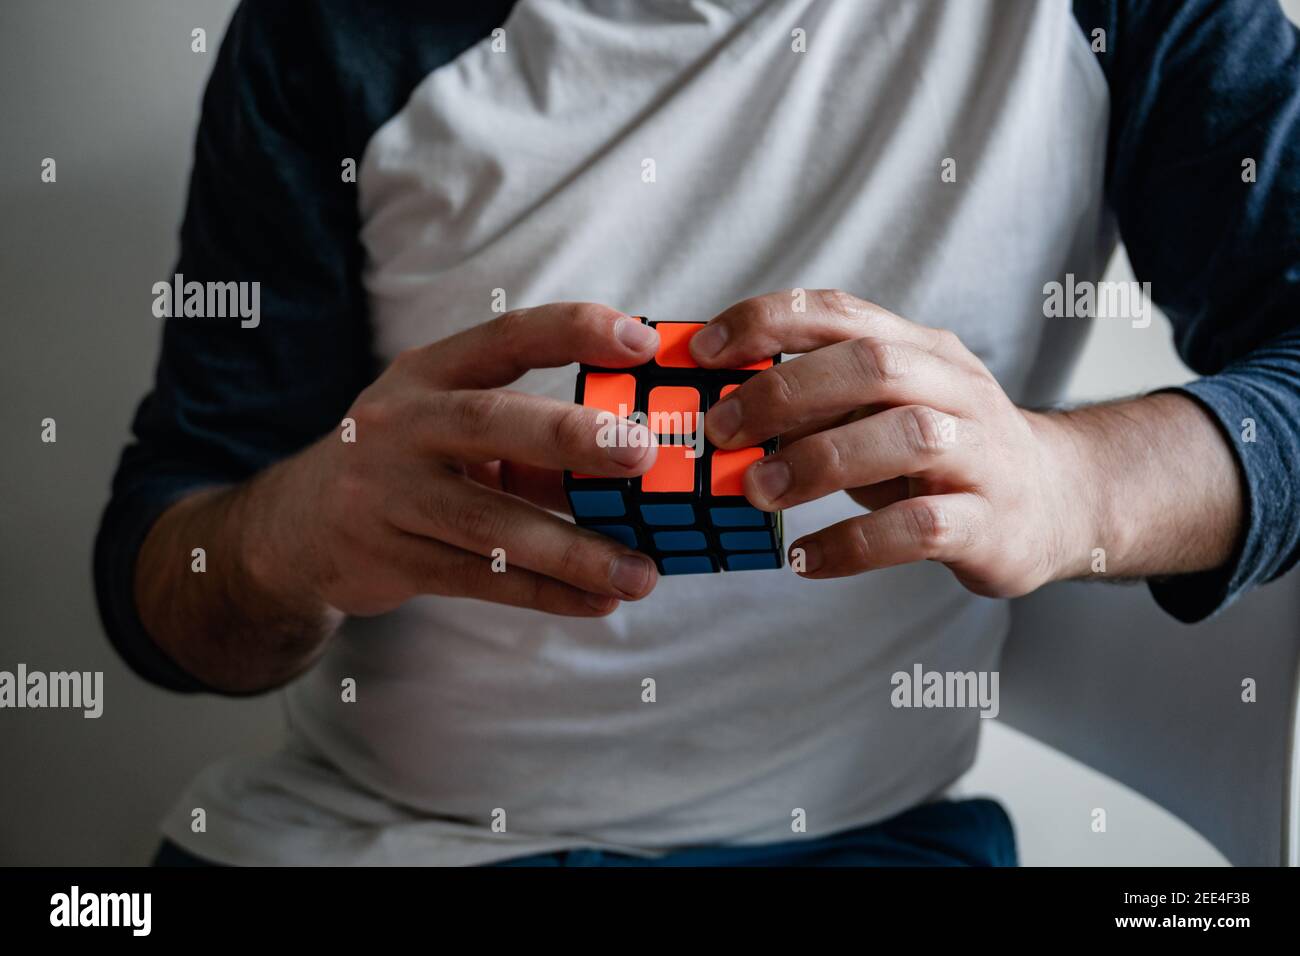 uomo molto intelligente risolvere un cubo di rubik, livello di iq molto alto, giovane molto intelligente Foto Stock